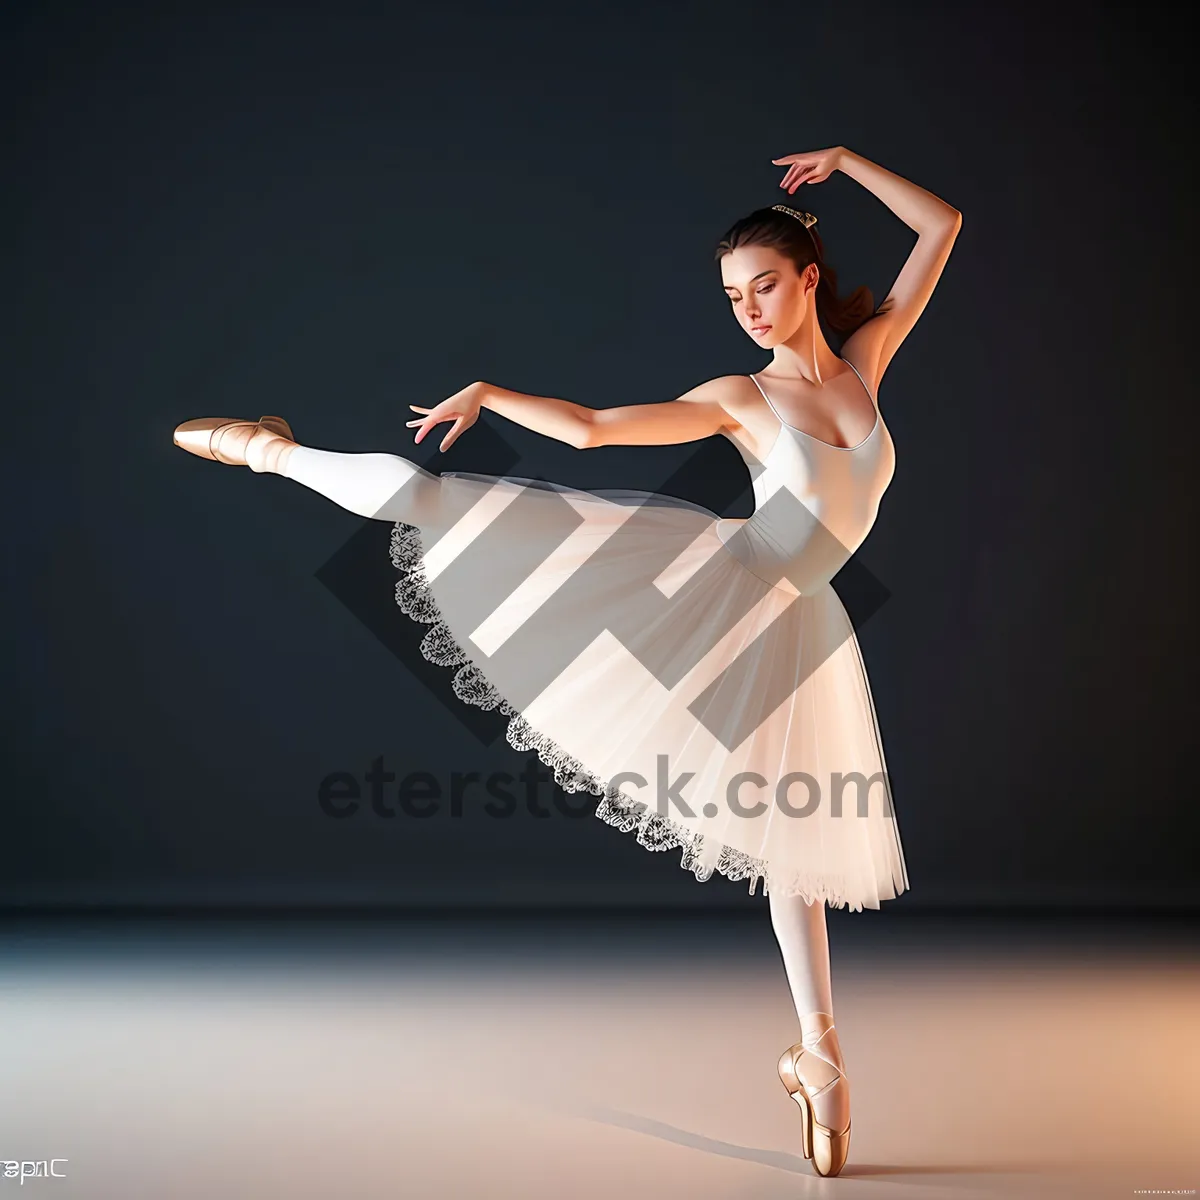 Picture of Elegant ballet dancer showcasing graceful moves.